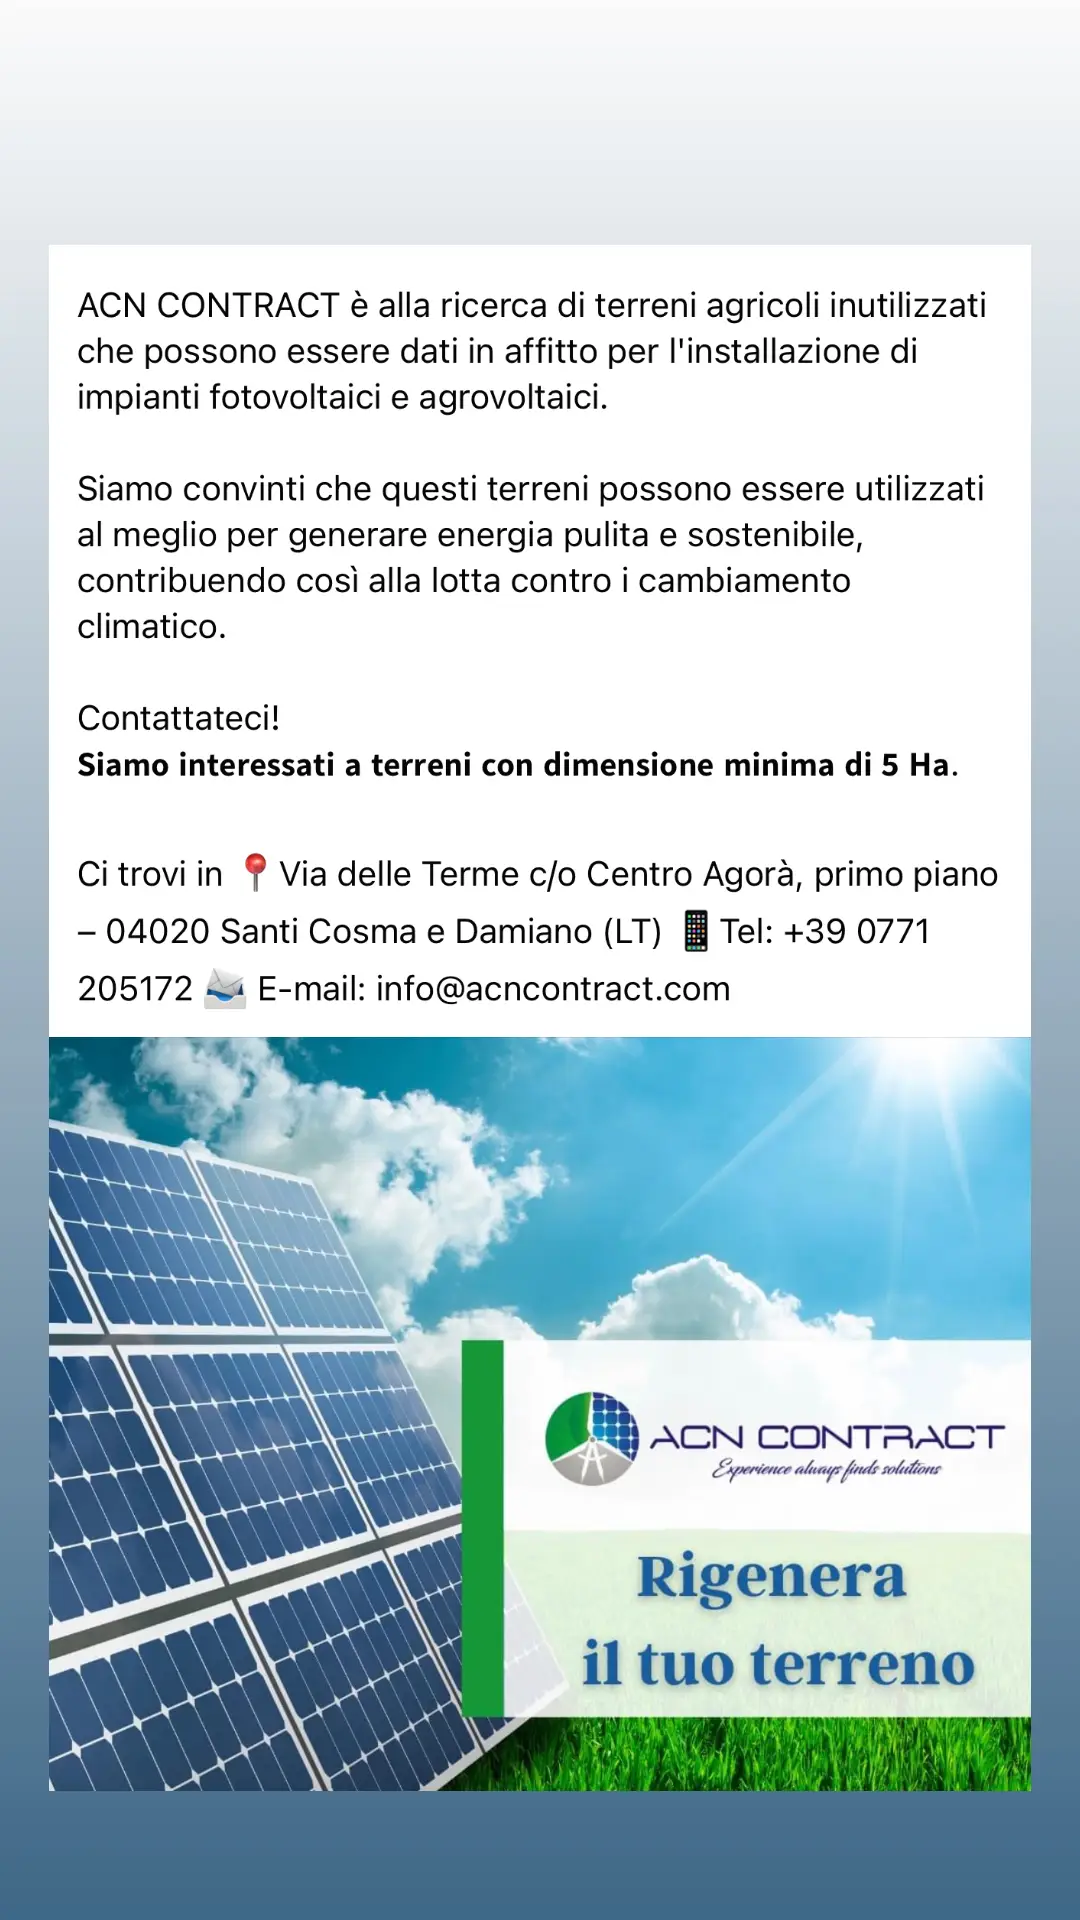 #acncontract #energierinnovabili #transizioneenergetica #fotovoltaico #agrovoltaico #nonfermiamolatrasizione #green 